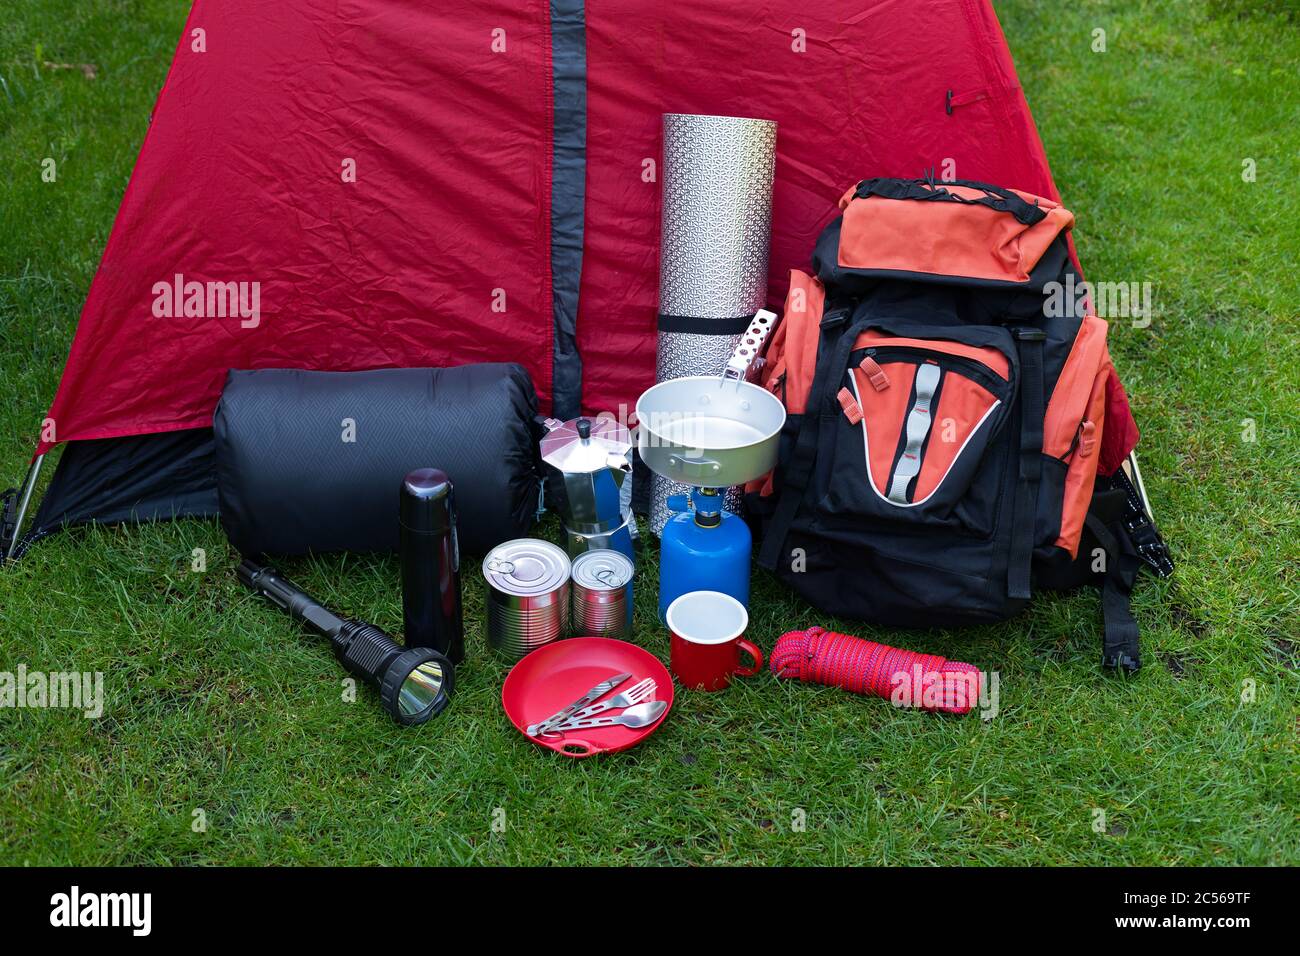 Photo des outils de camping sur l'herbe - sac à dos, tente, réservoir de  gaz, canettes, boussole, etc - prêt à aller dans les bois Photo Stock -  Alamy